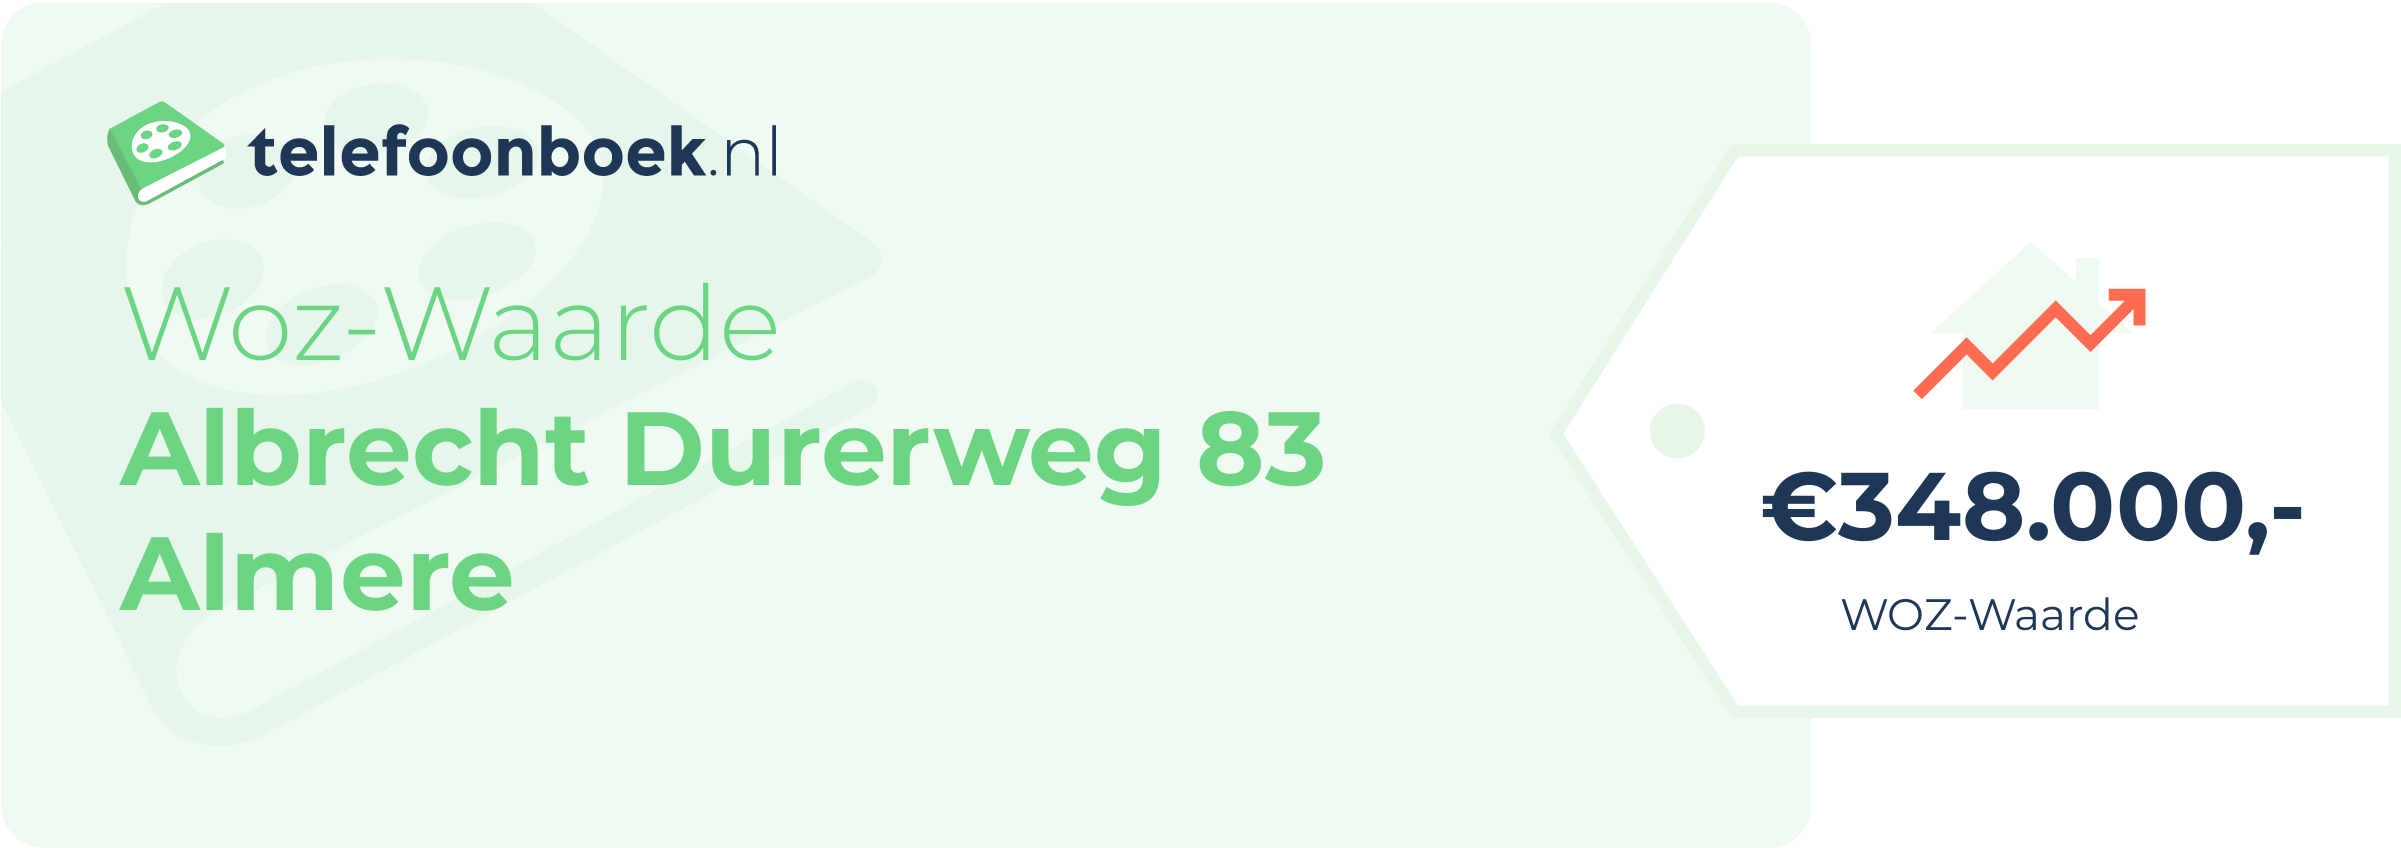 WOZ-waarde Albrecht Durerweg 83 Almere